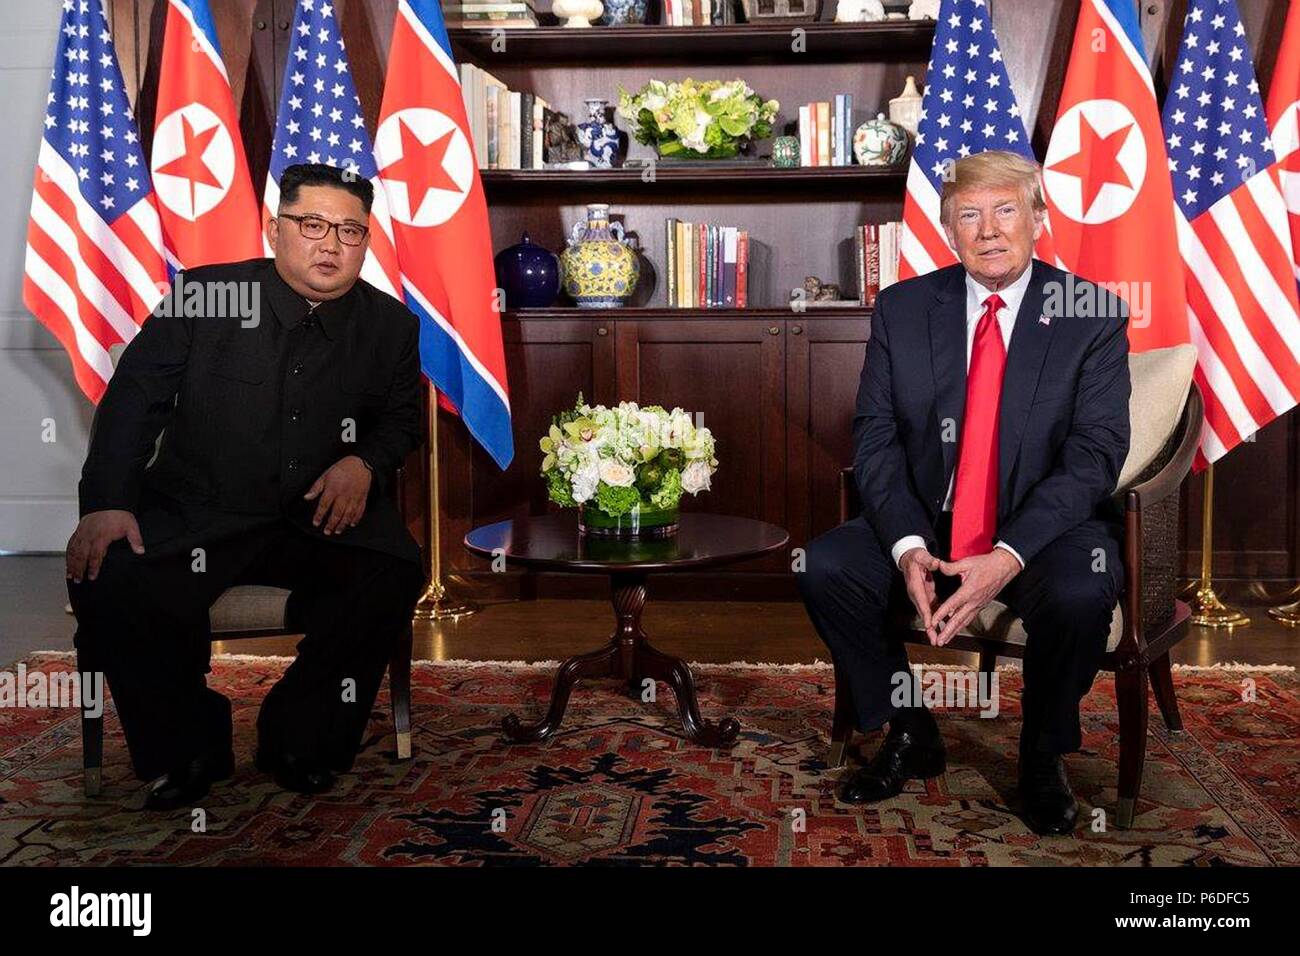 Le Président américain Donald Trump, à droite, est assis à côté de le dirigeant nord-coréen Kim Jong Un avant le début de leur réunion bilatérale à la Capella resort 12 Juin, 2018 dans l'île de Sentosa, Singapour. Banque D'Images